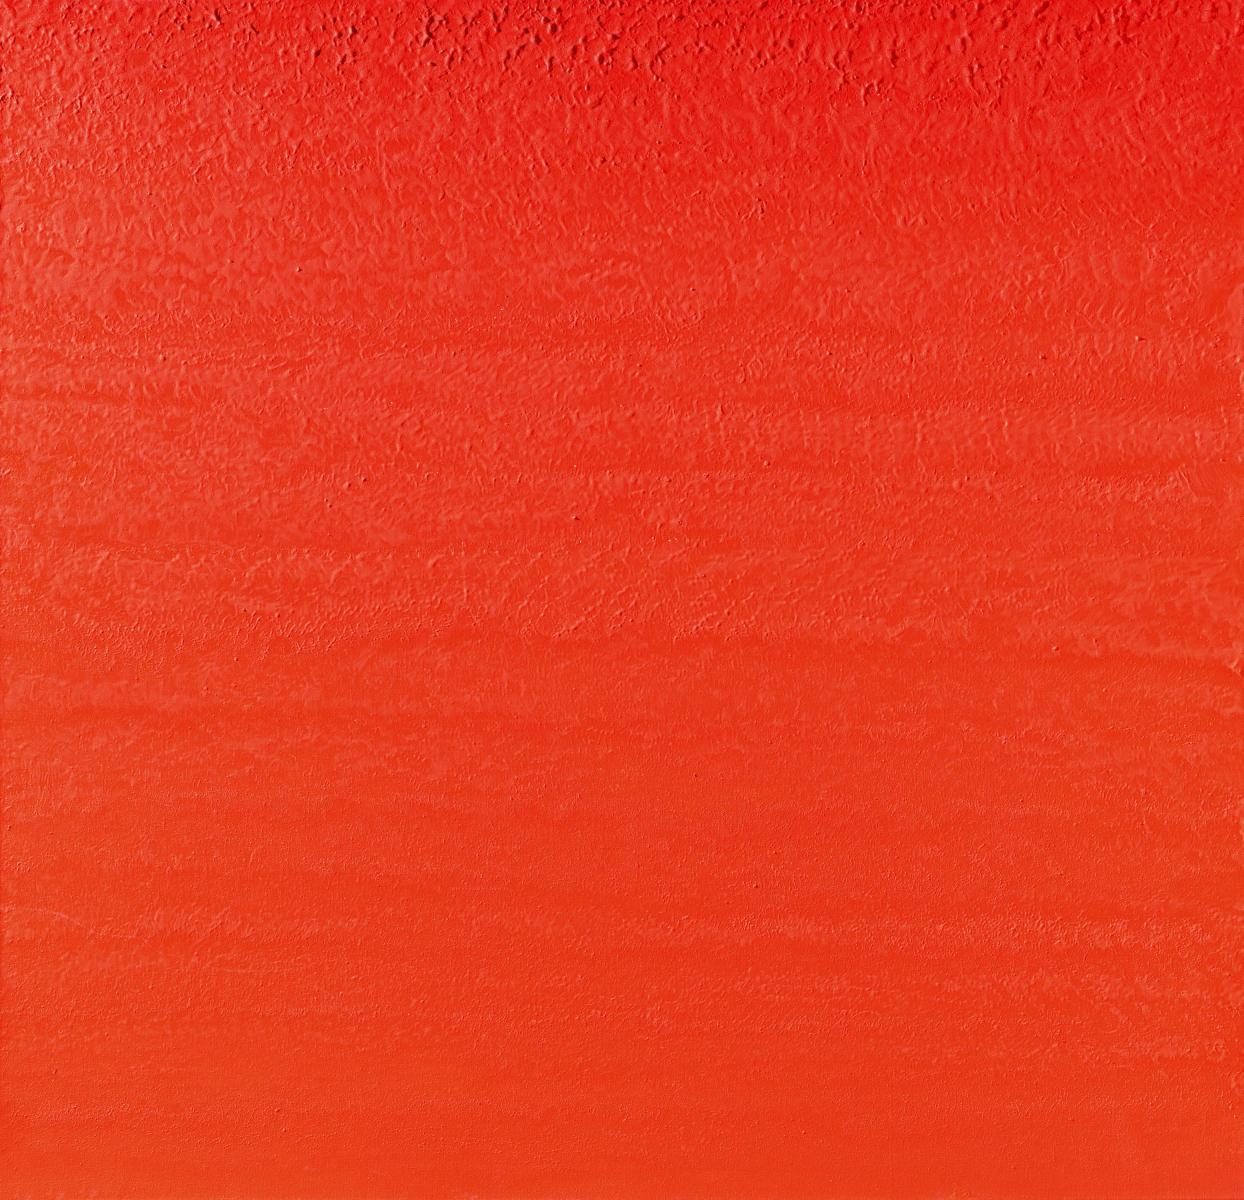 Rupprecht Geiger - 83491 Moduliertes Orange, 64173-1, Van Ham Kunstauktionen